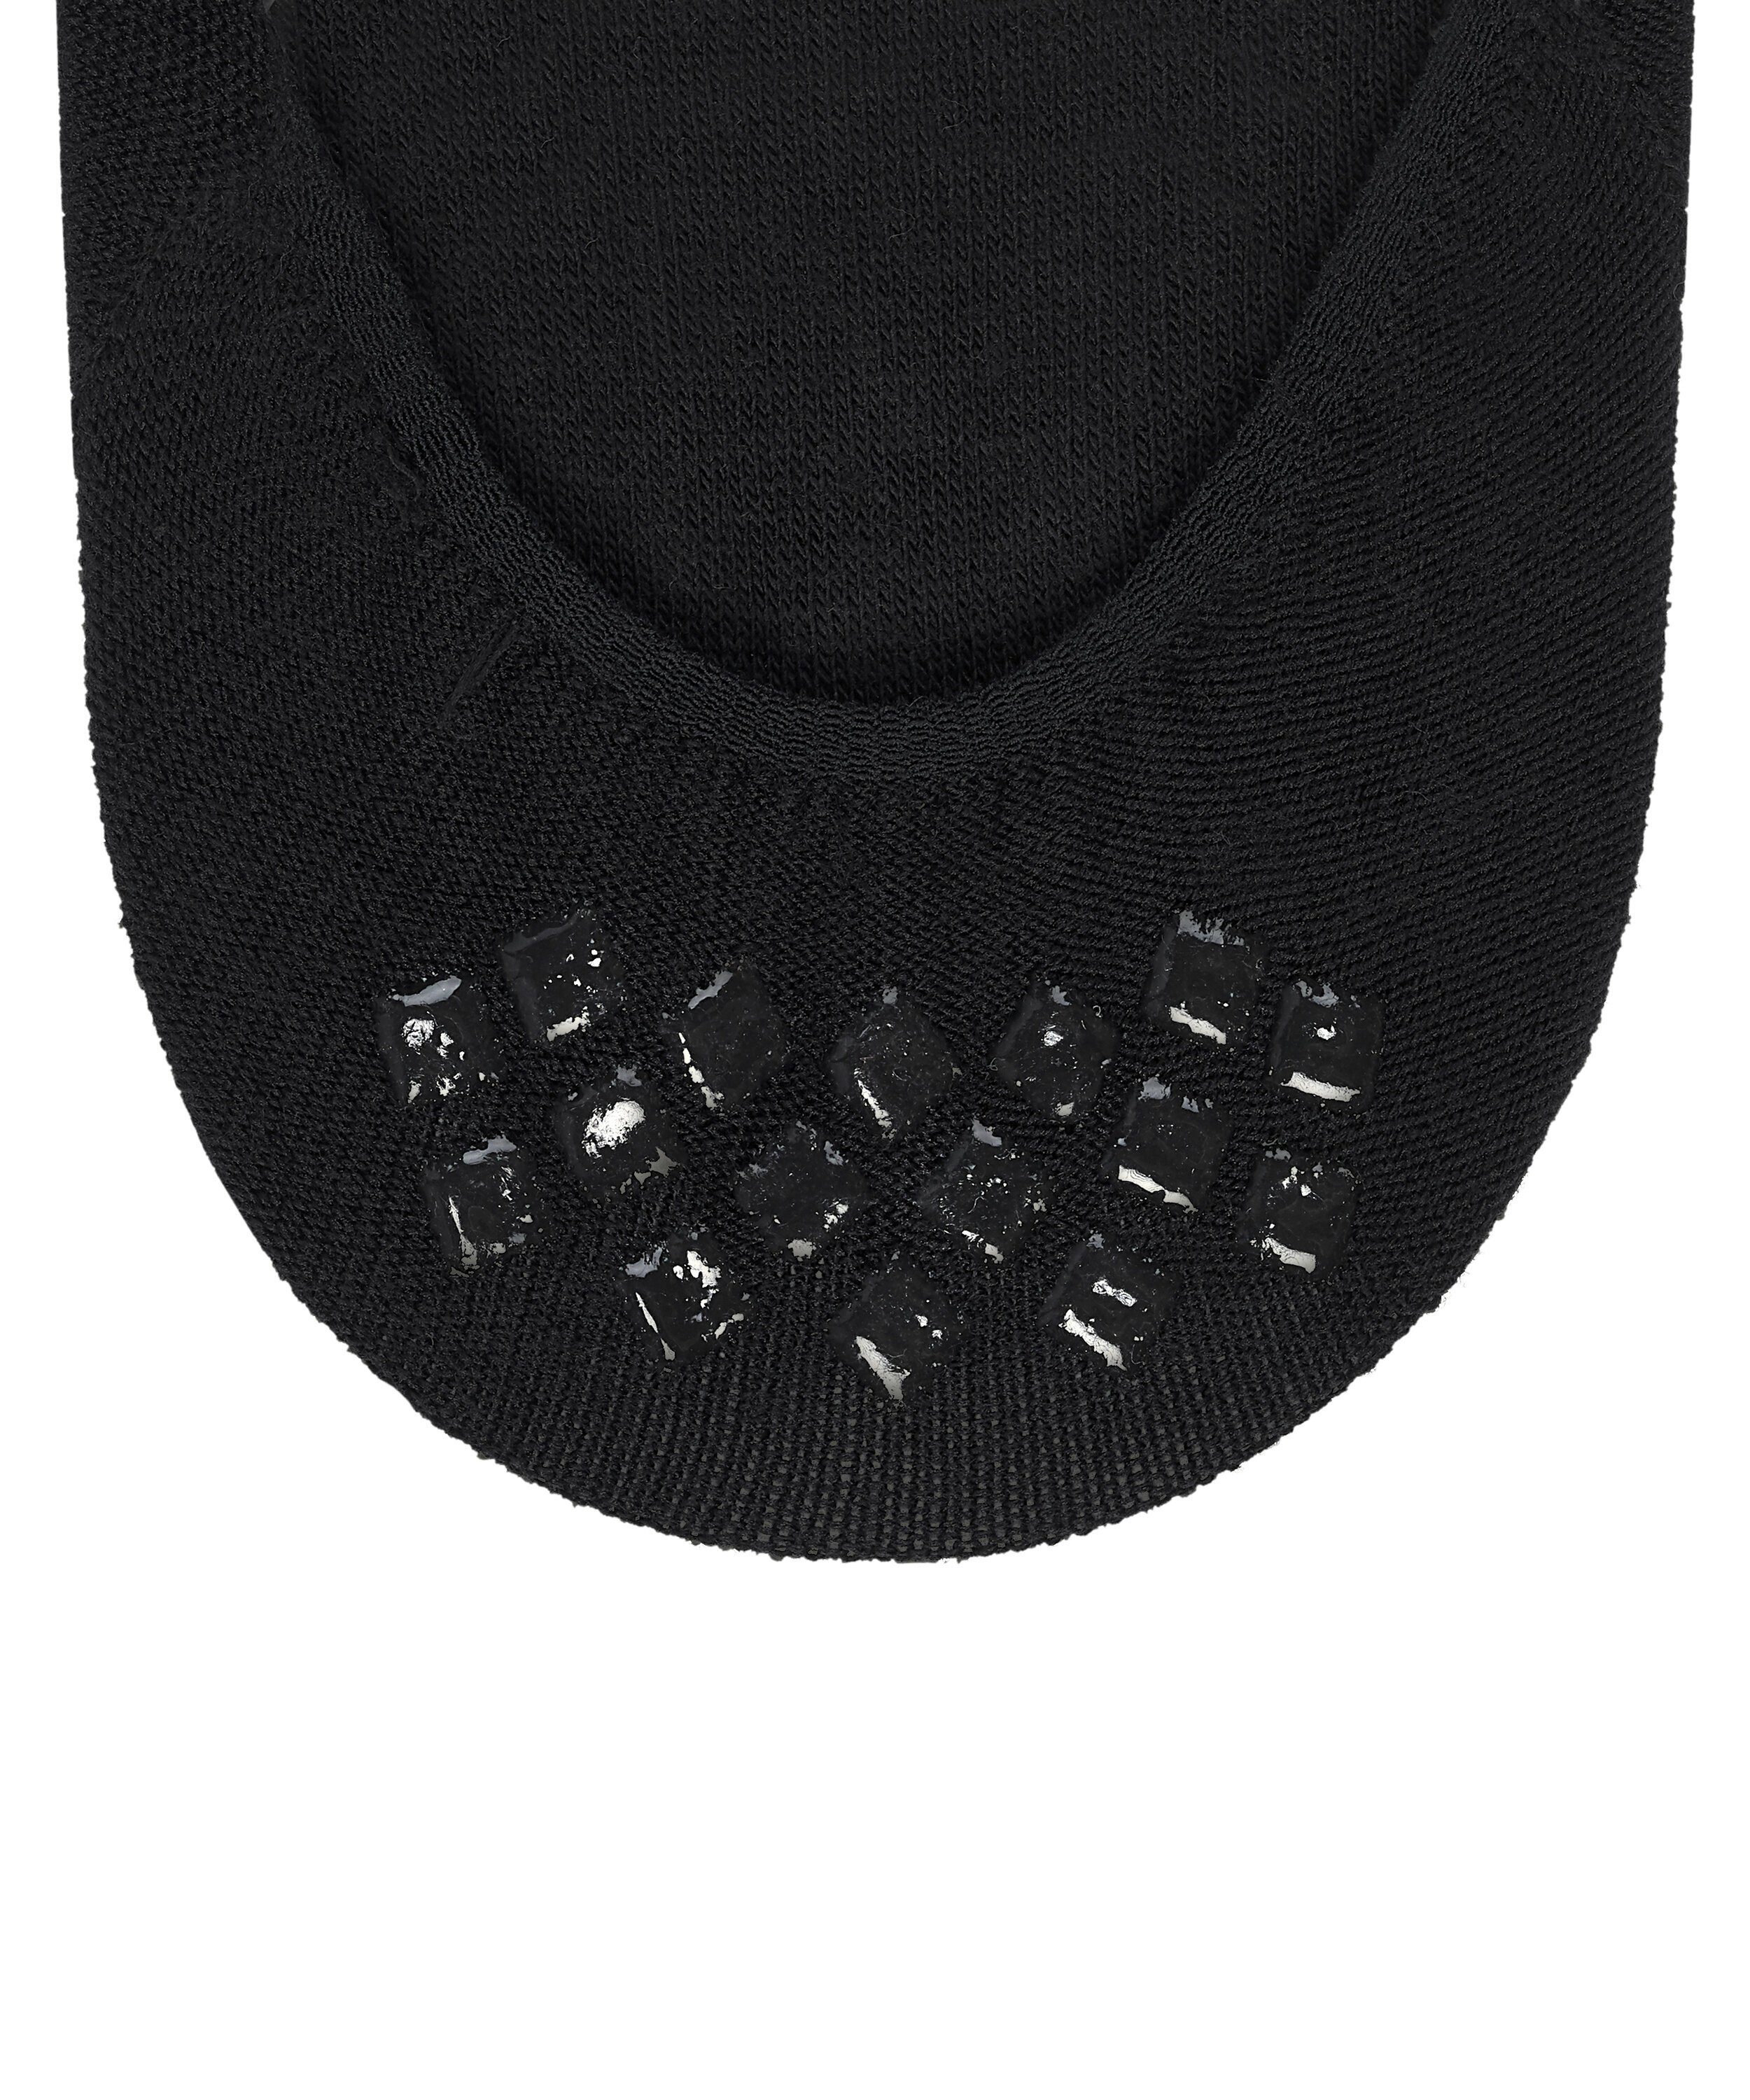 FALKE Box black (3000) Medium Cut Füßlinge Step mit Anti-Slip-System